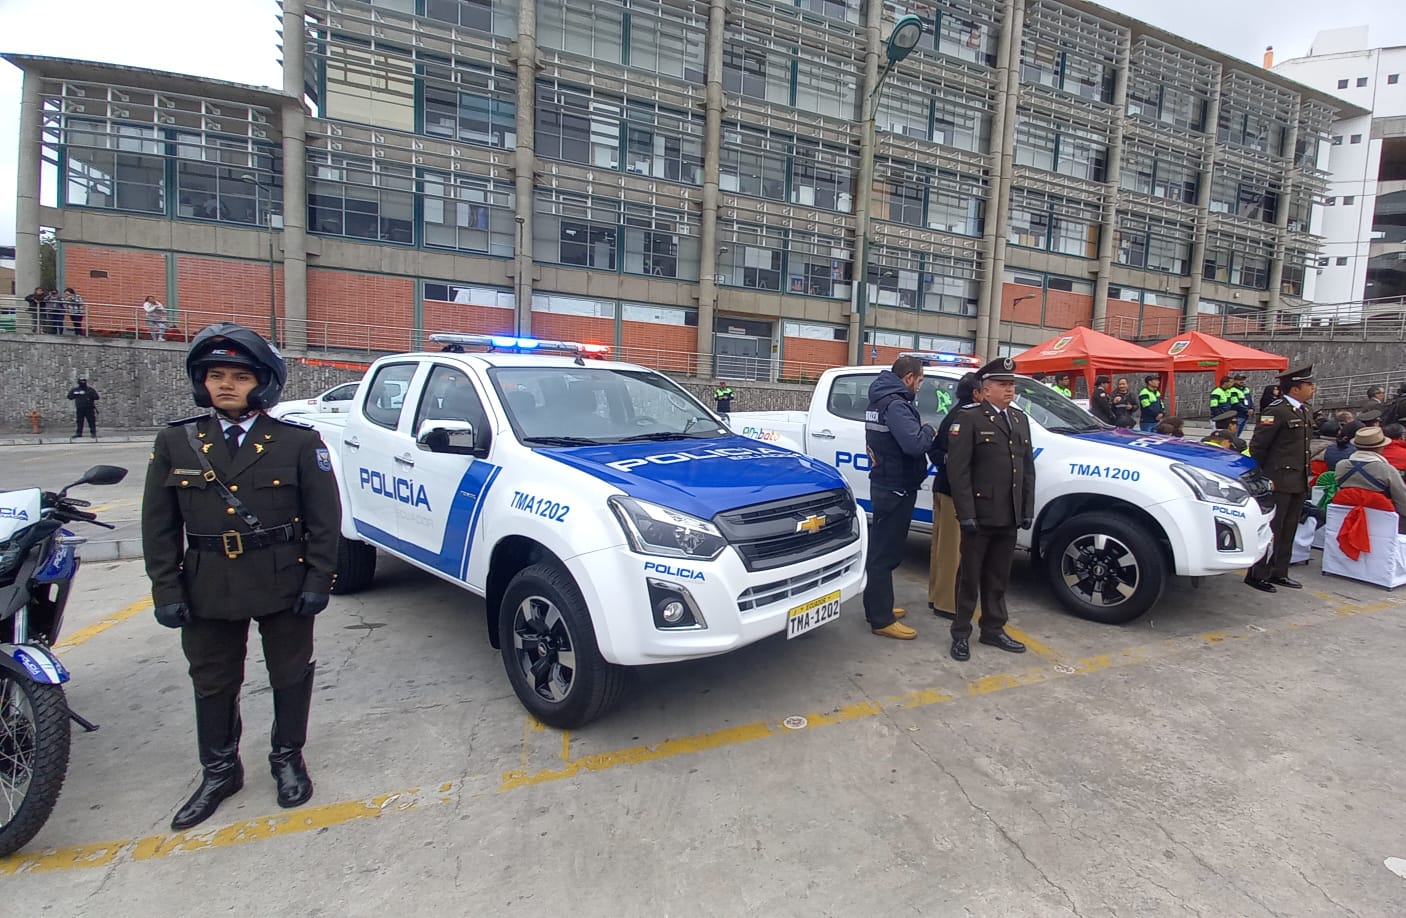 Los vehículos entregados por el Municipio de Ambato están equipados para que la Policía Nacional pueda ocuparlos.